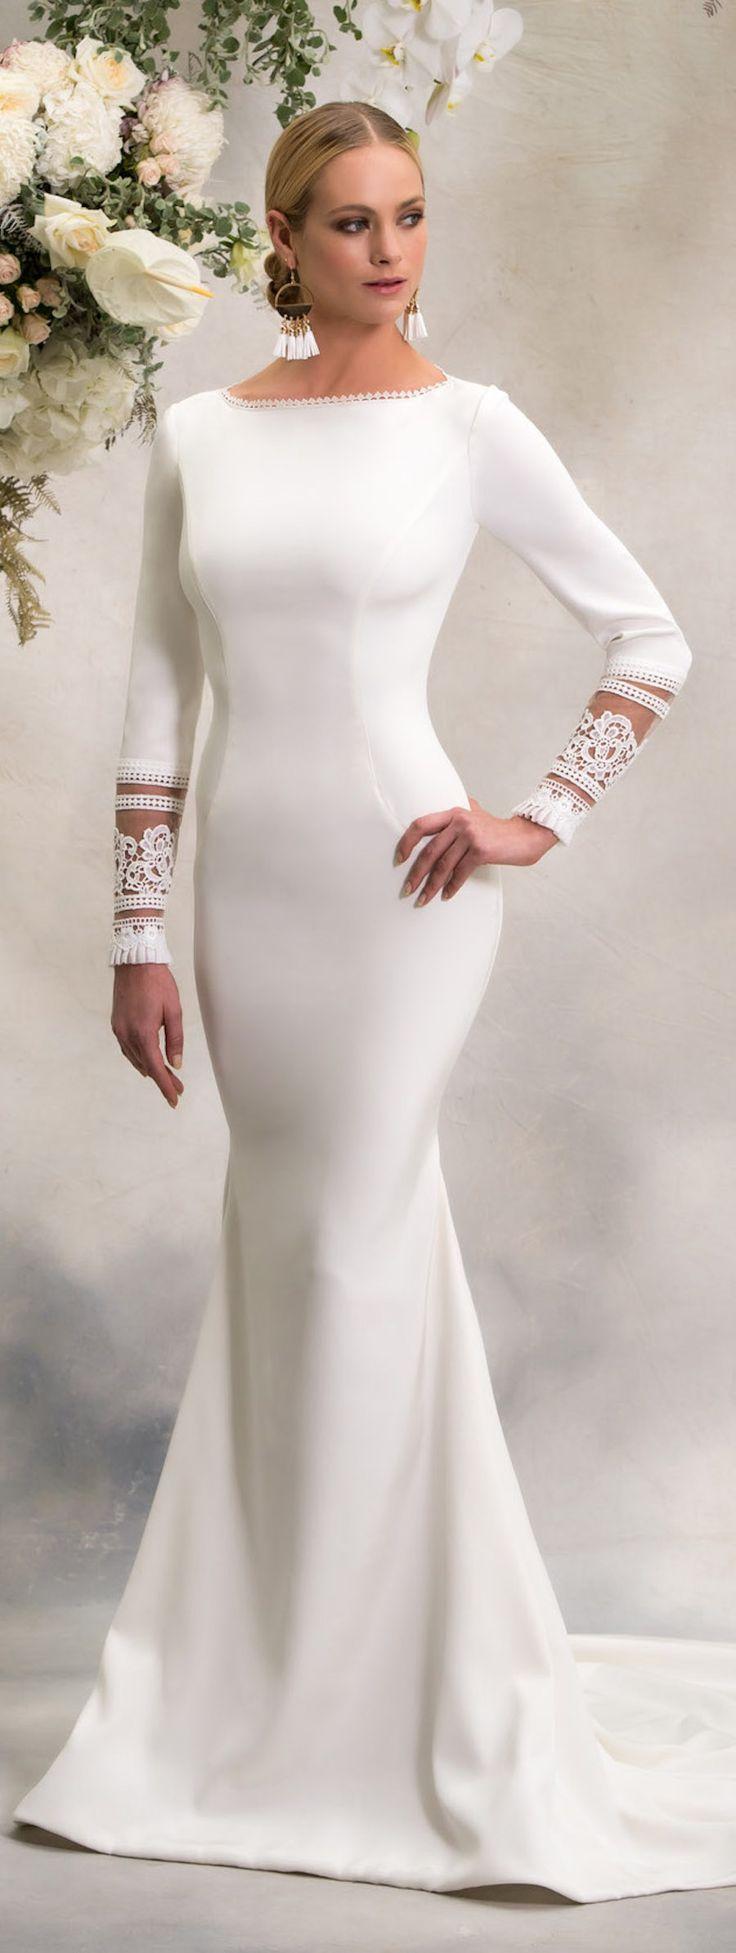 meghan markle inspired wedding dress